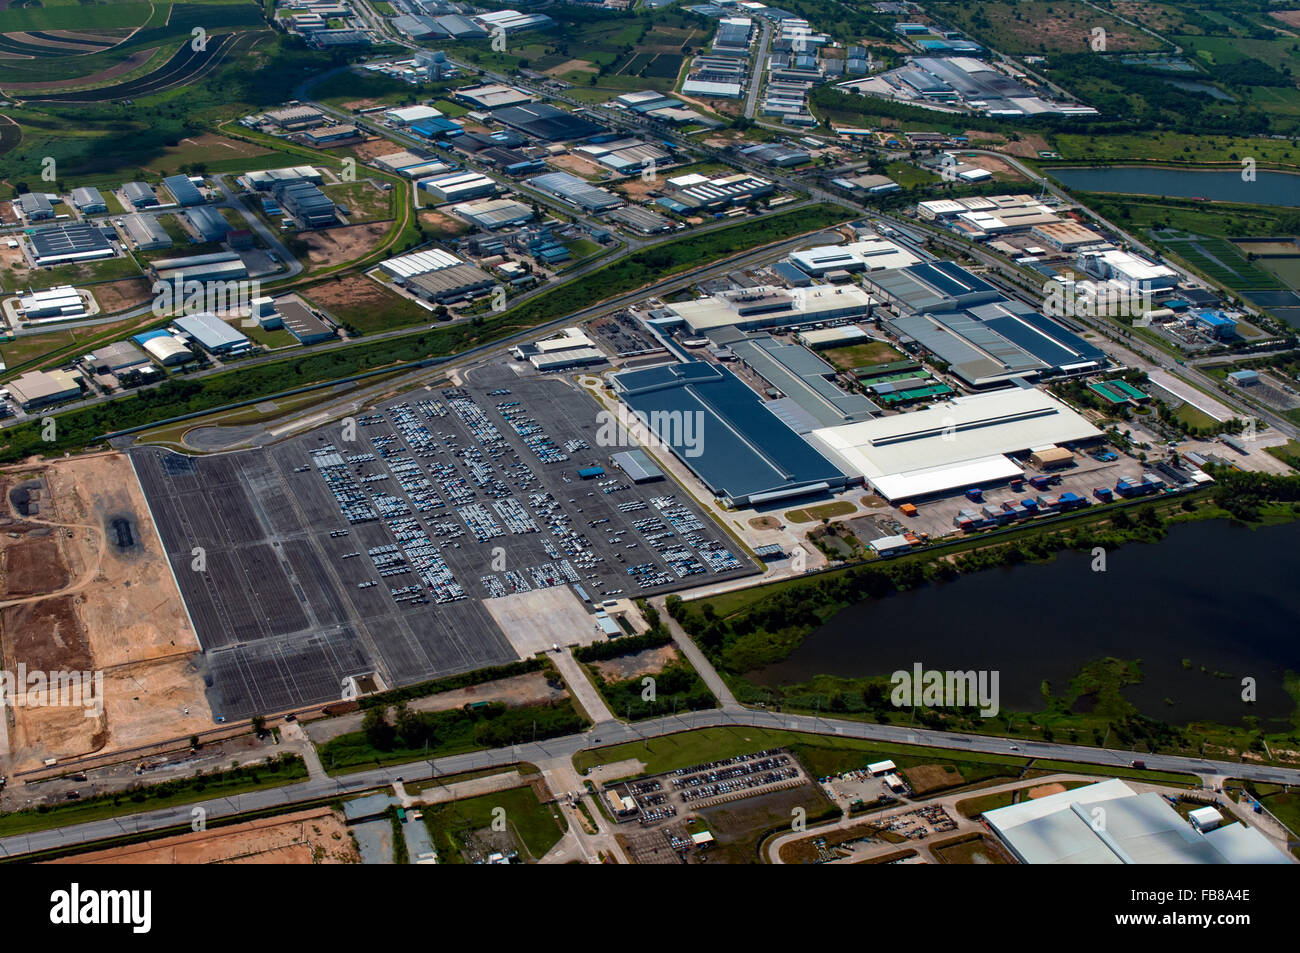 Industrial Estate, l'industrie lourde, fabricant, fabricant d'automobiles en Thaïlande Banque D'Images